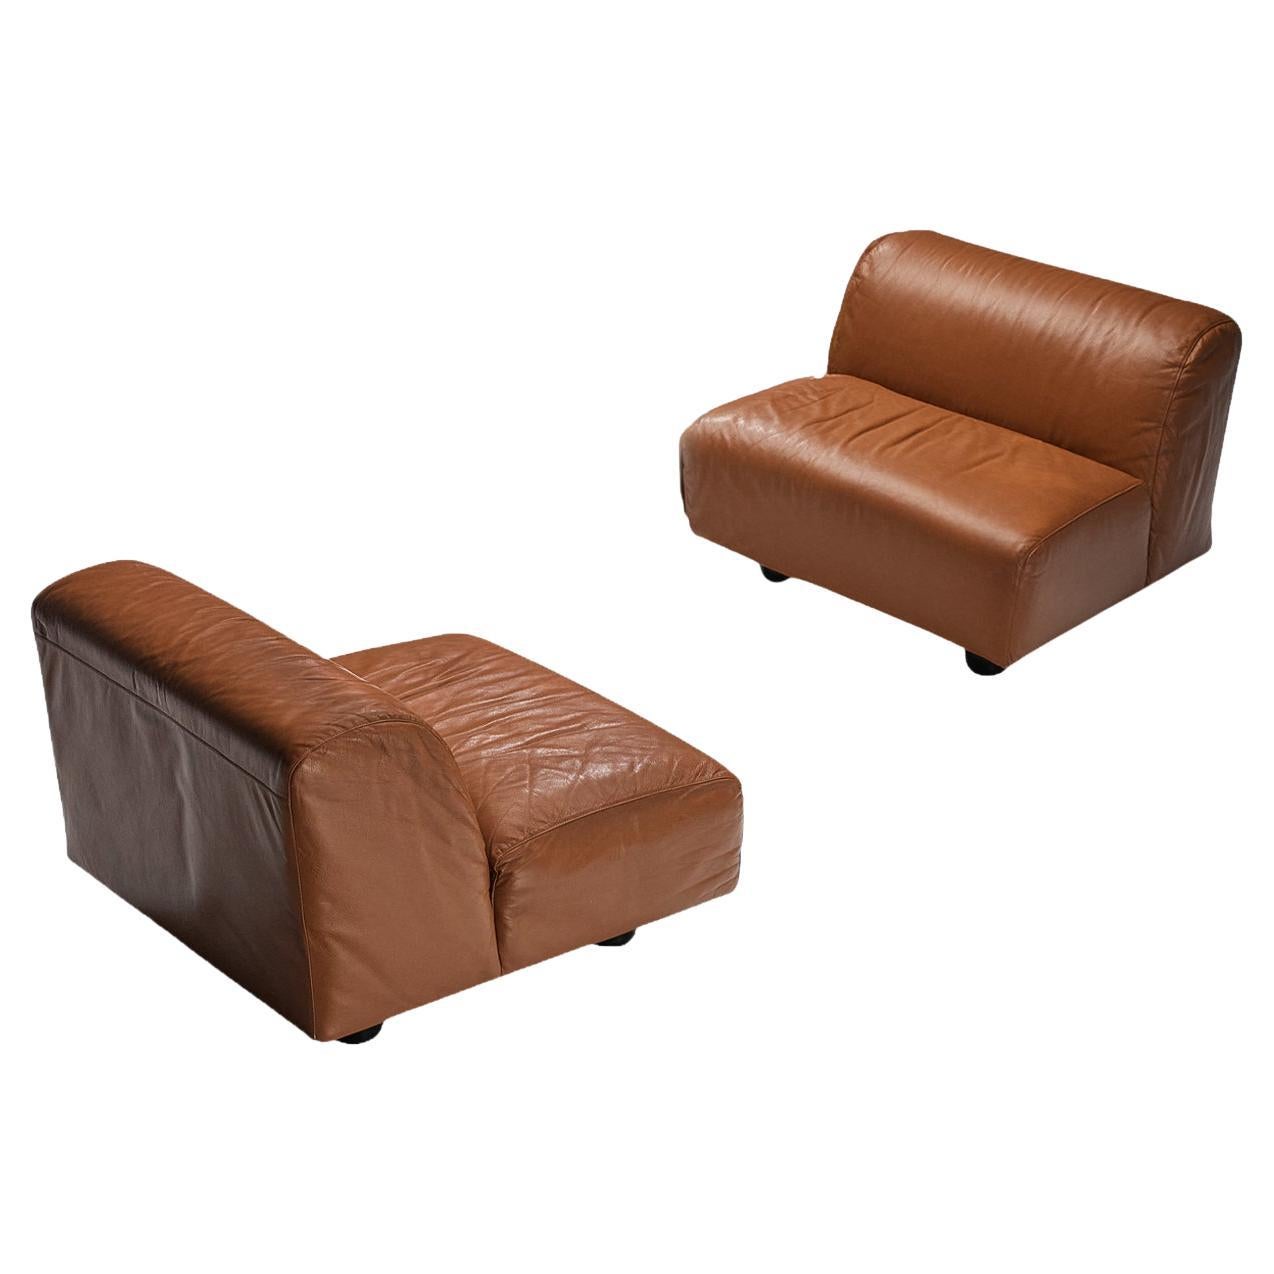 Vico Magistretti for Cassina 'Fiandra' Modular Sofa in Brown Leather  For Sale